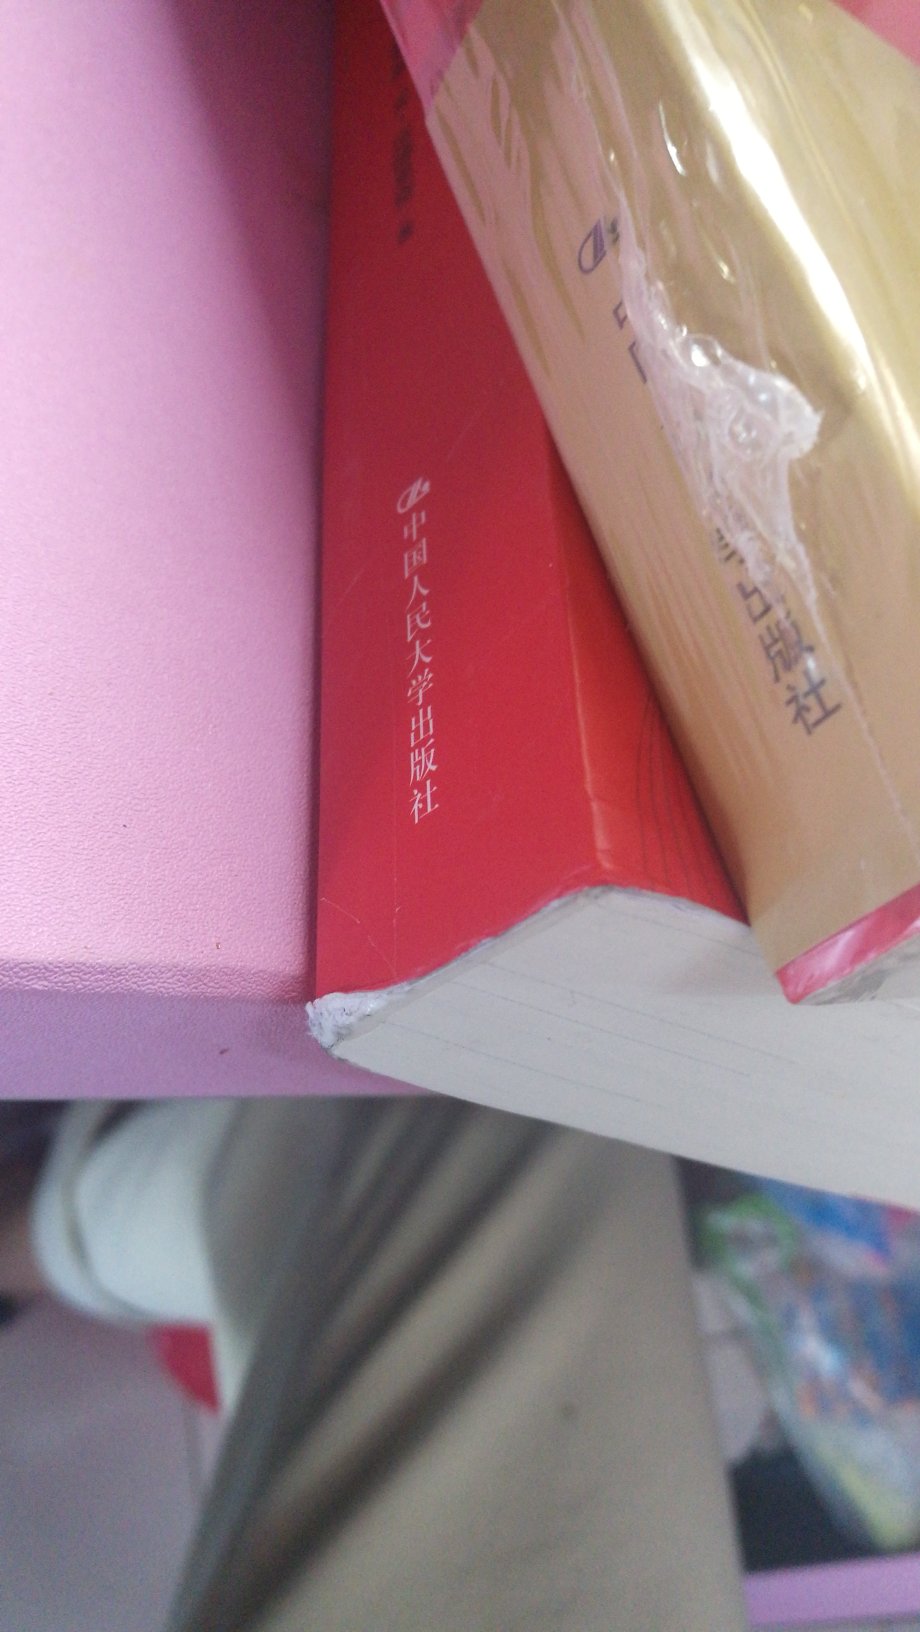 书的包装特别简陋，于是导致了书有一点破损